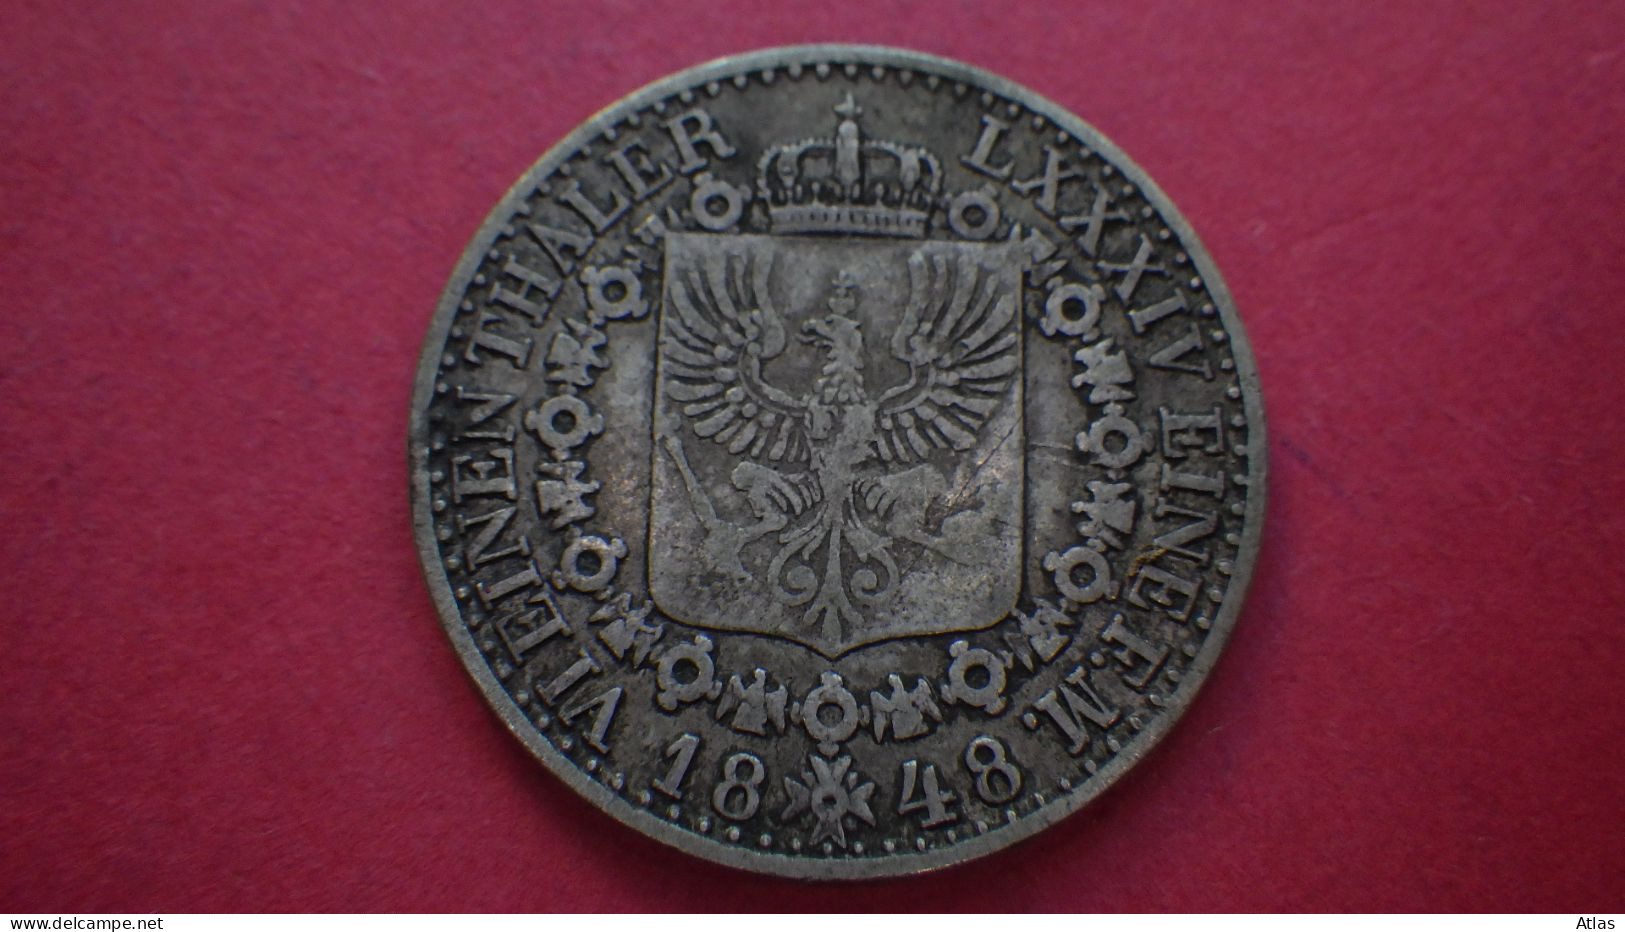 Prusse 1/6 de Thaler 1848 pièce de monnaie en argent